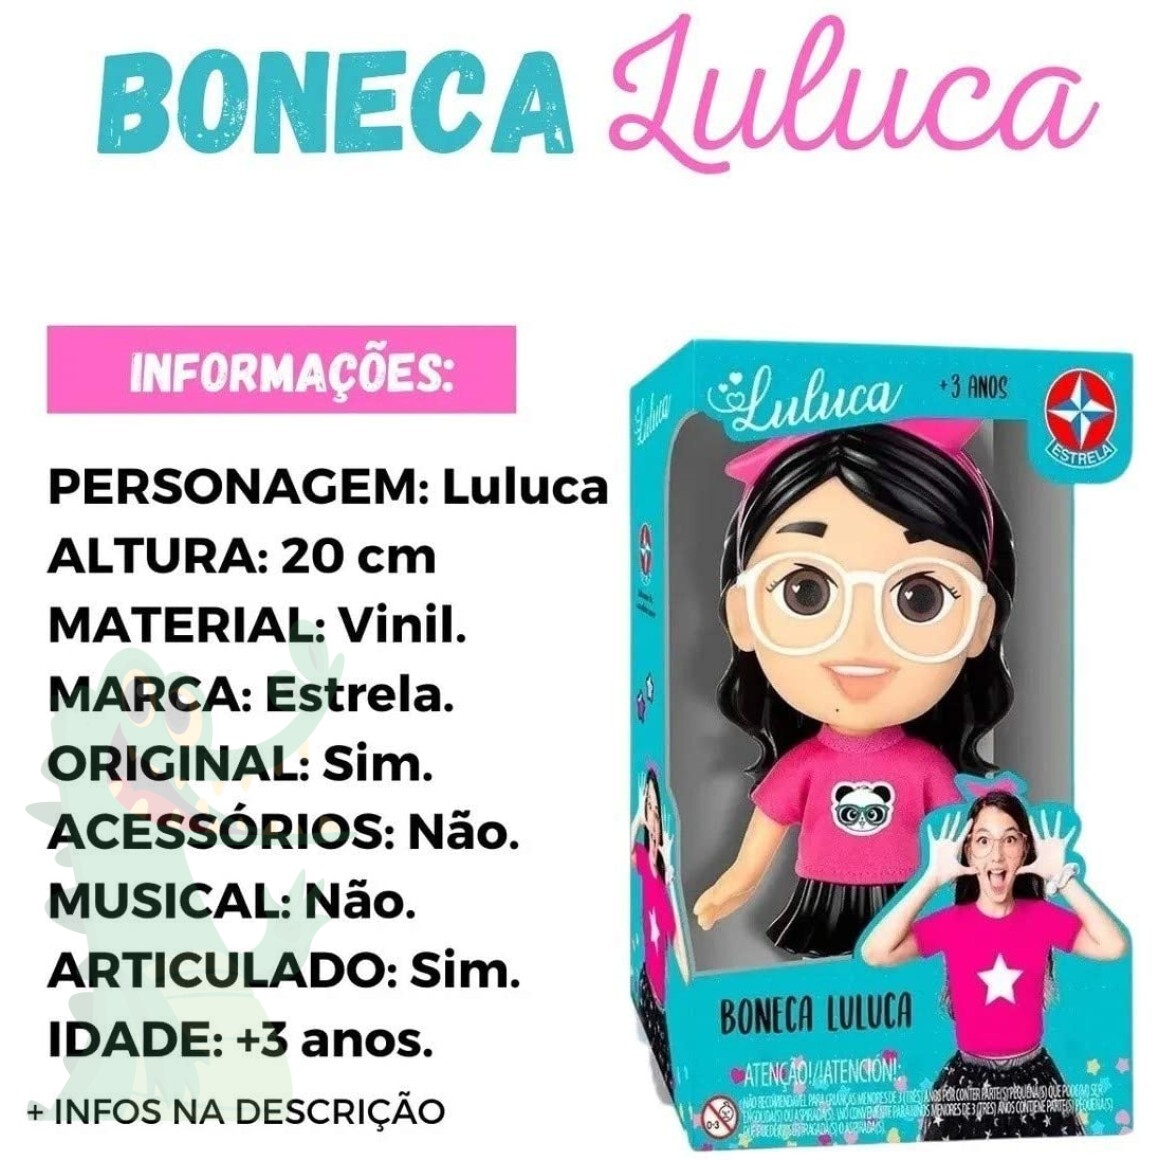 Boneca Luluca com Som - Estrela